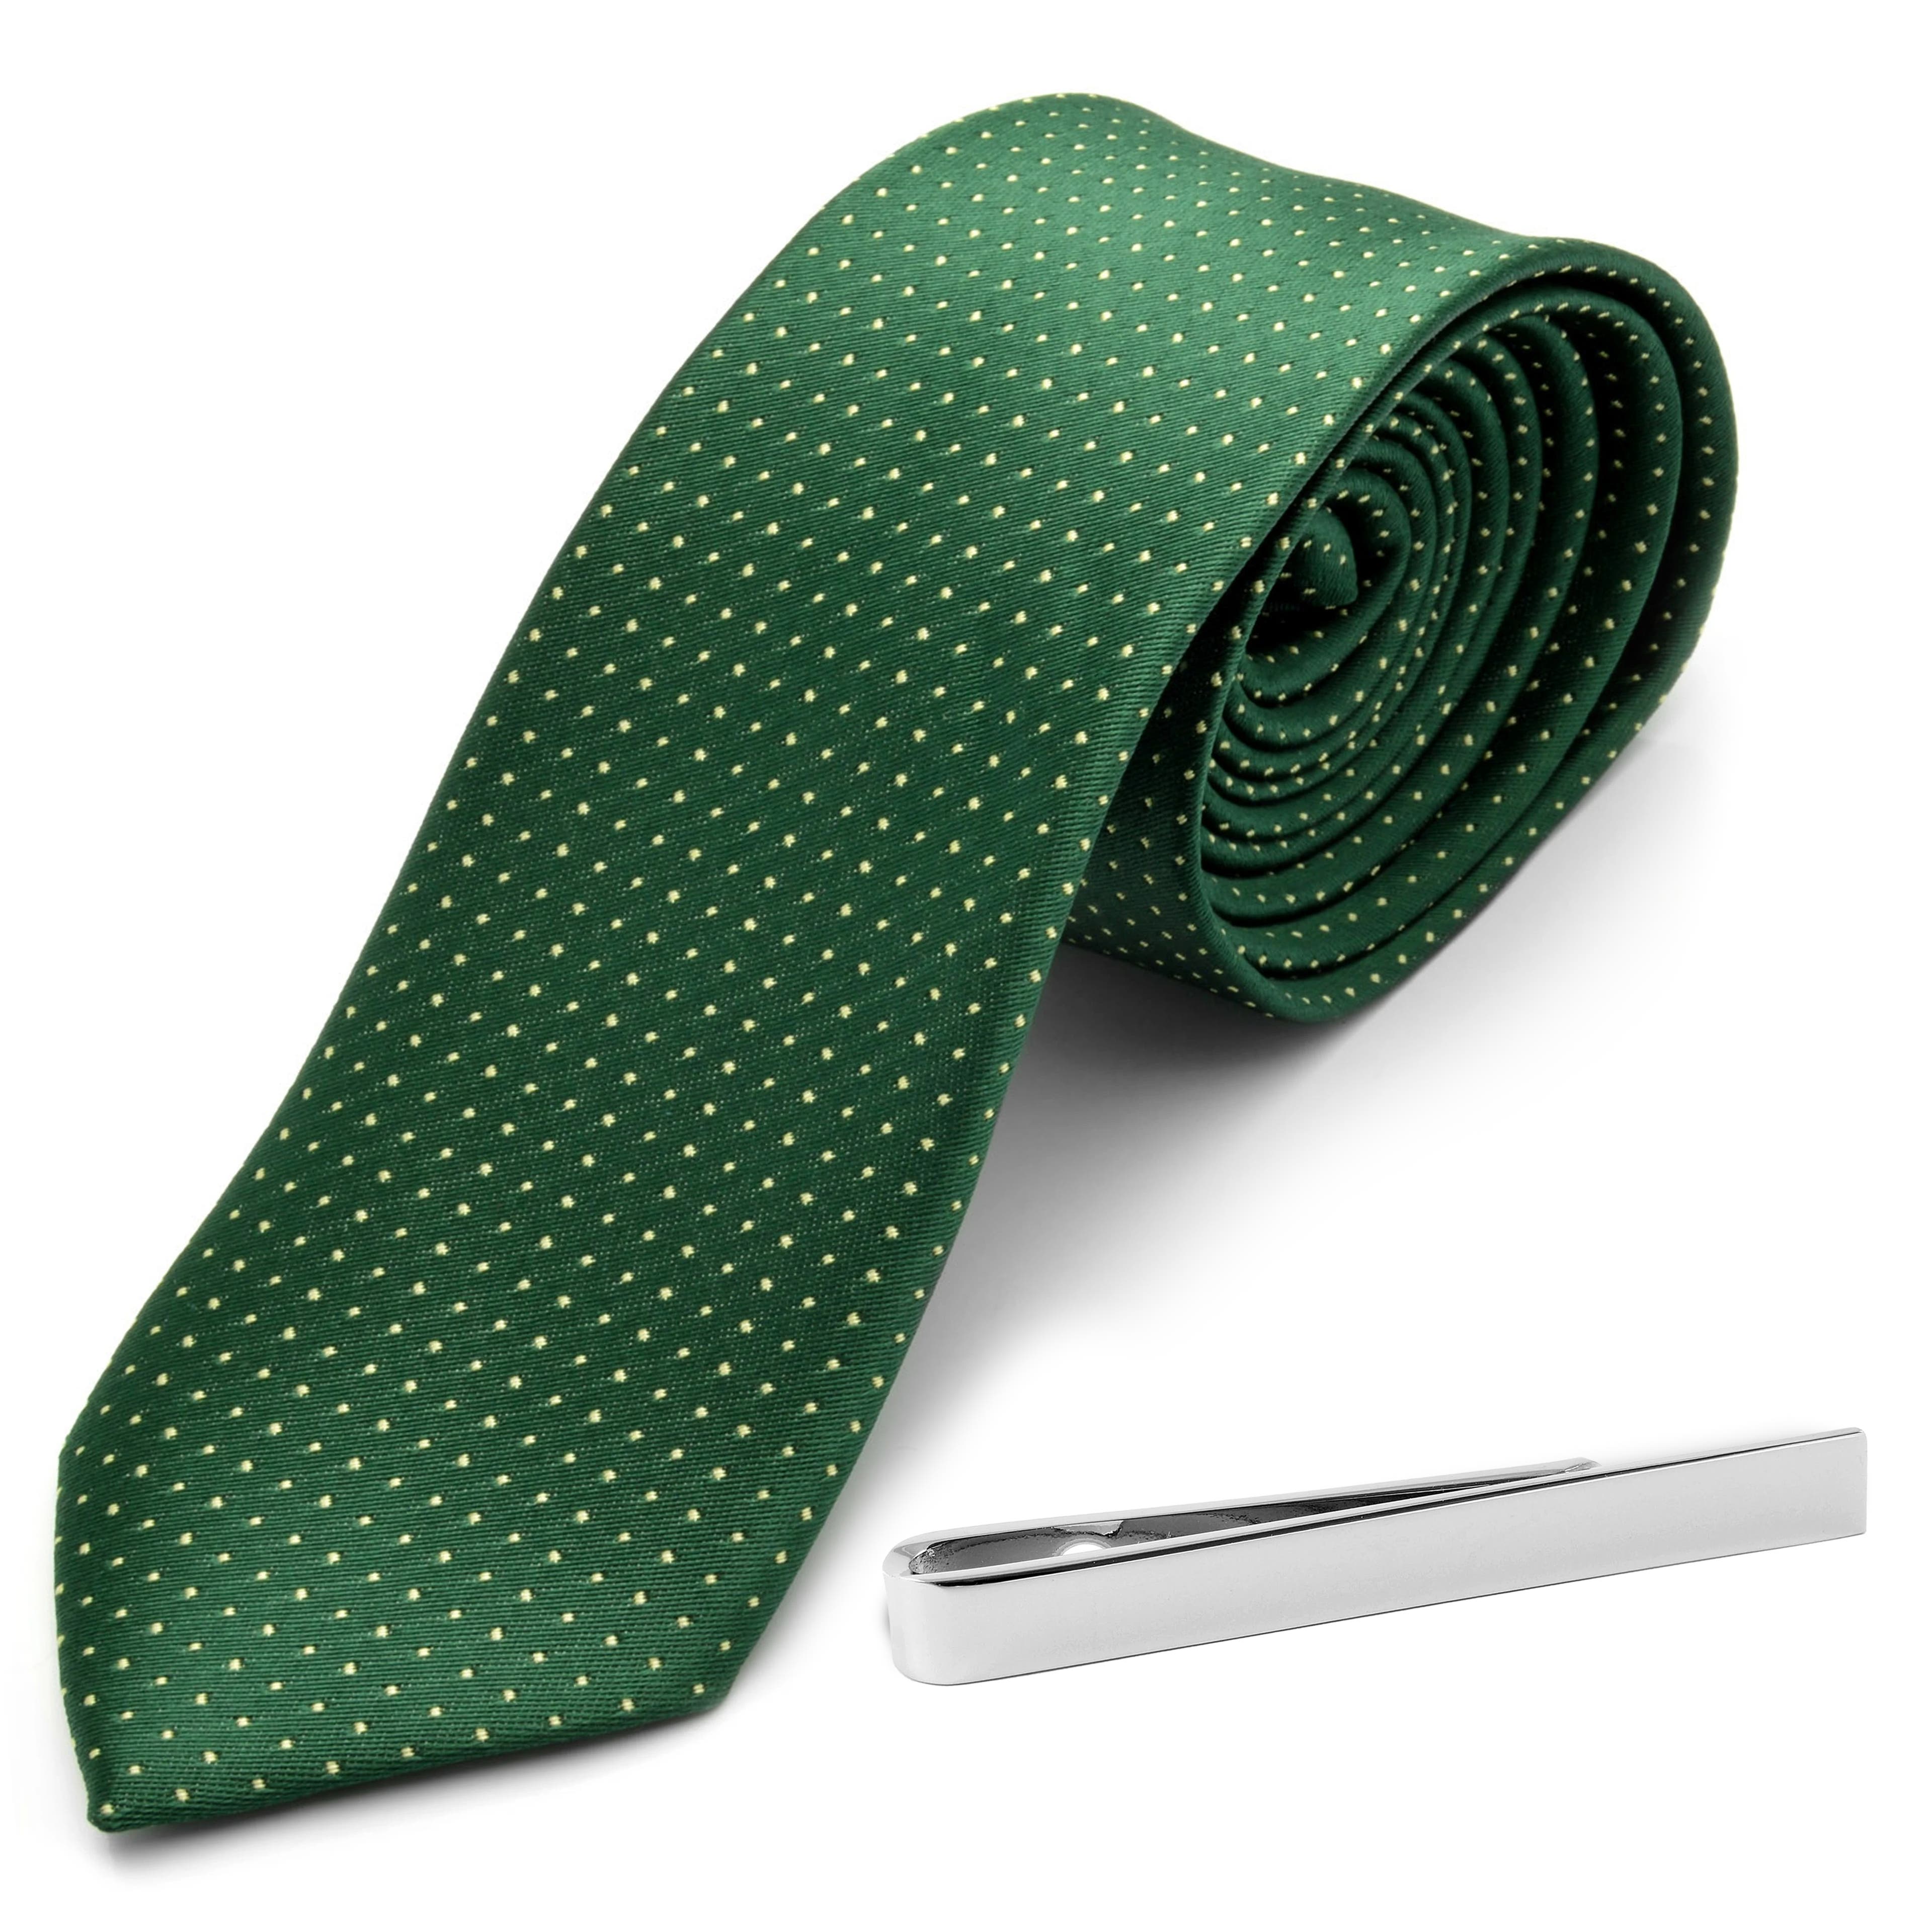 Zestaw zielony krawat w kropki i srebrzysta spinka do krawata